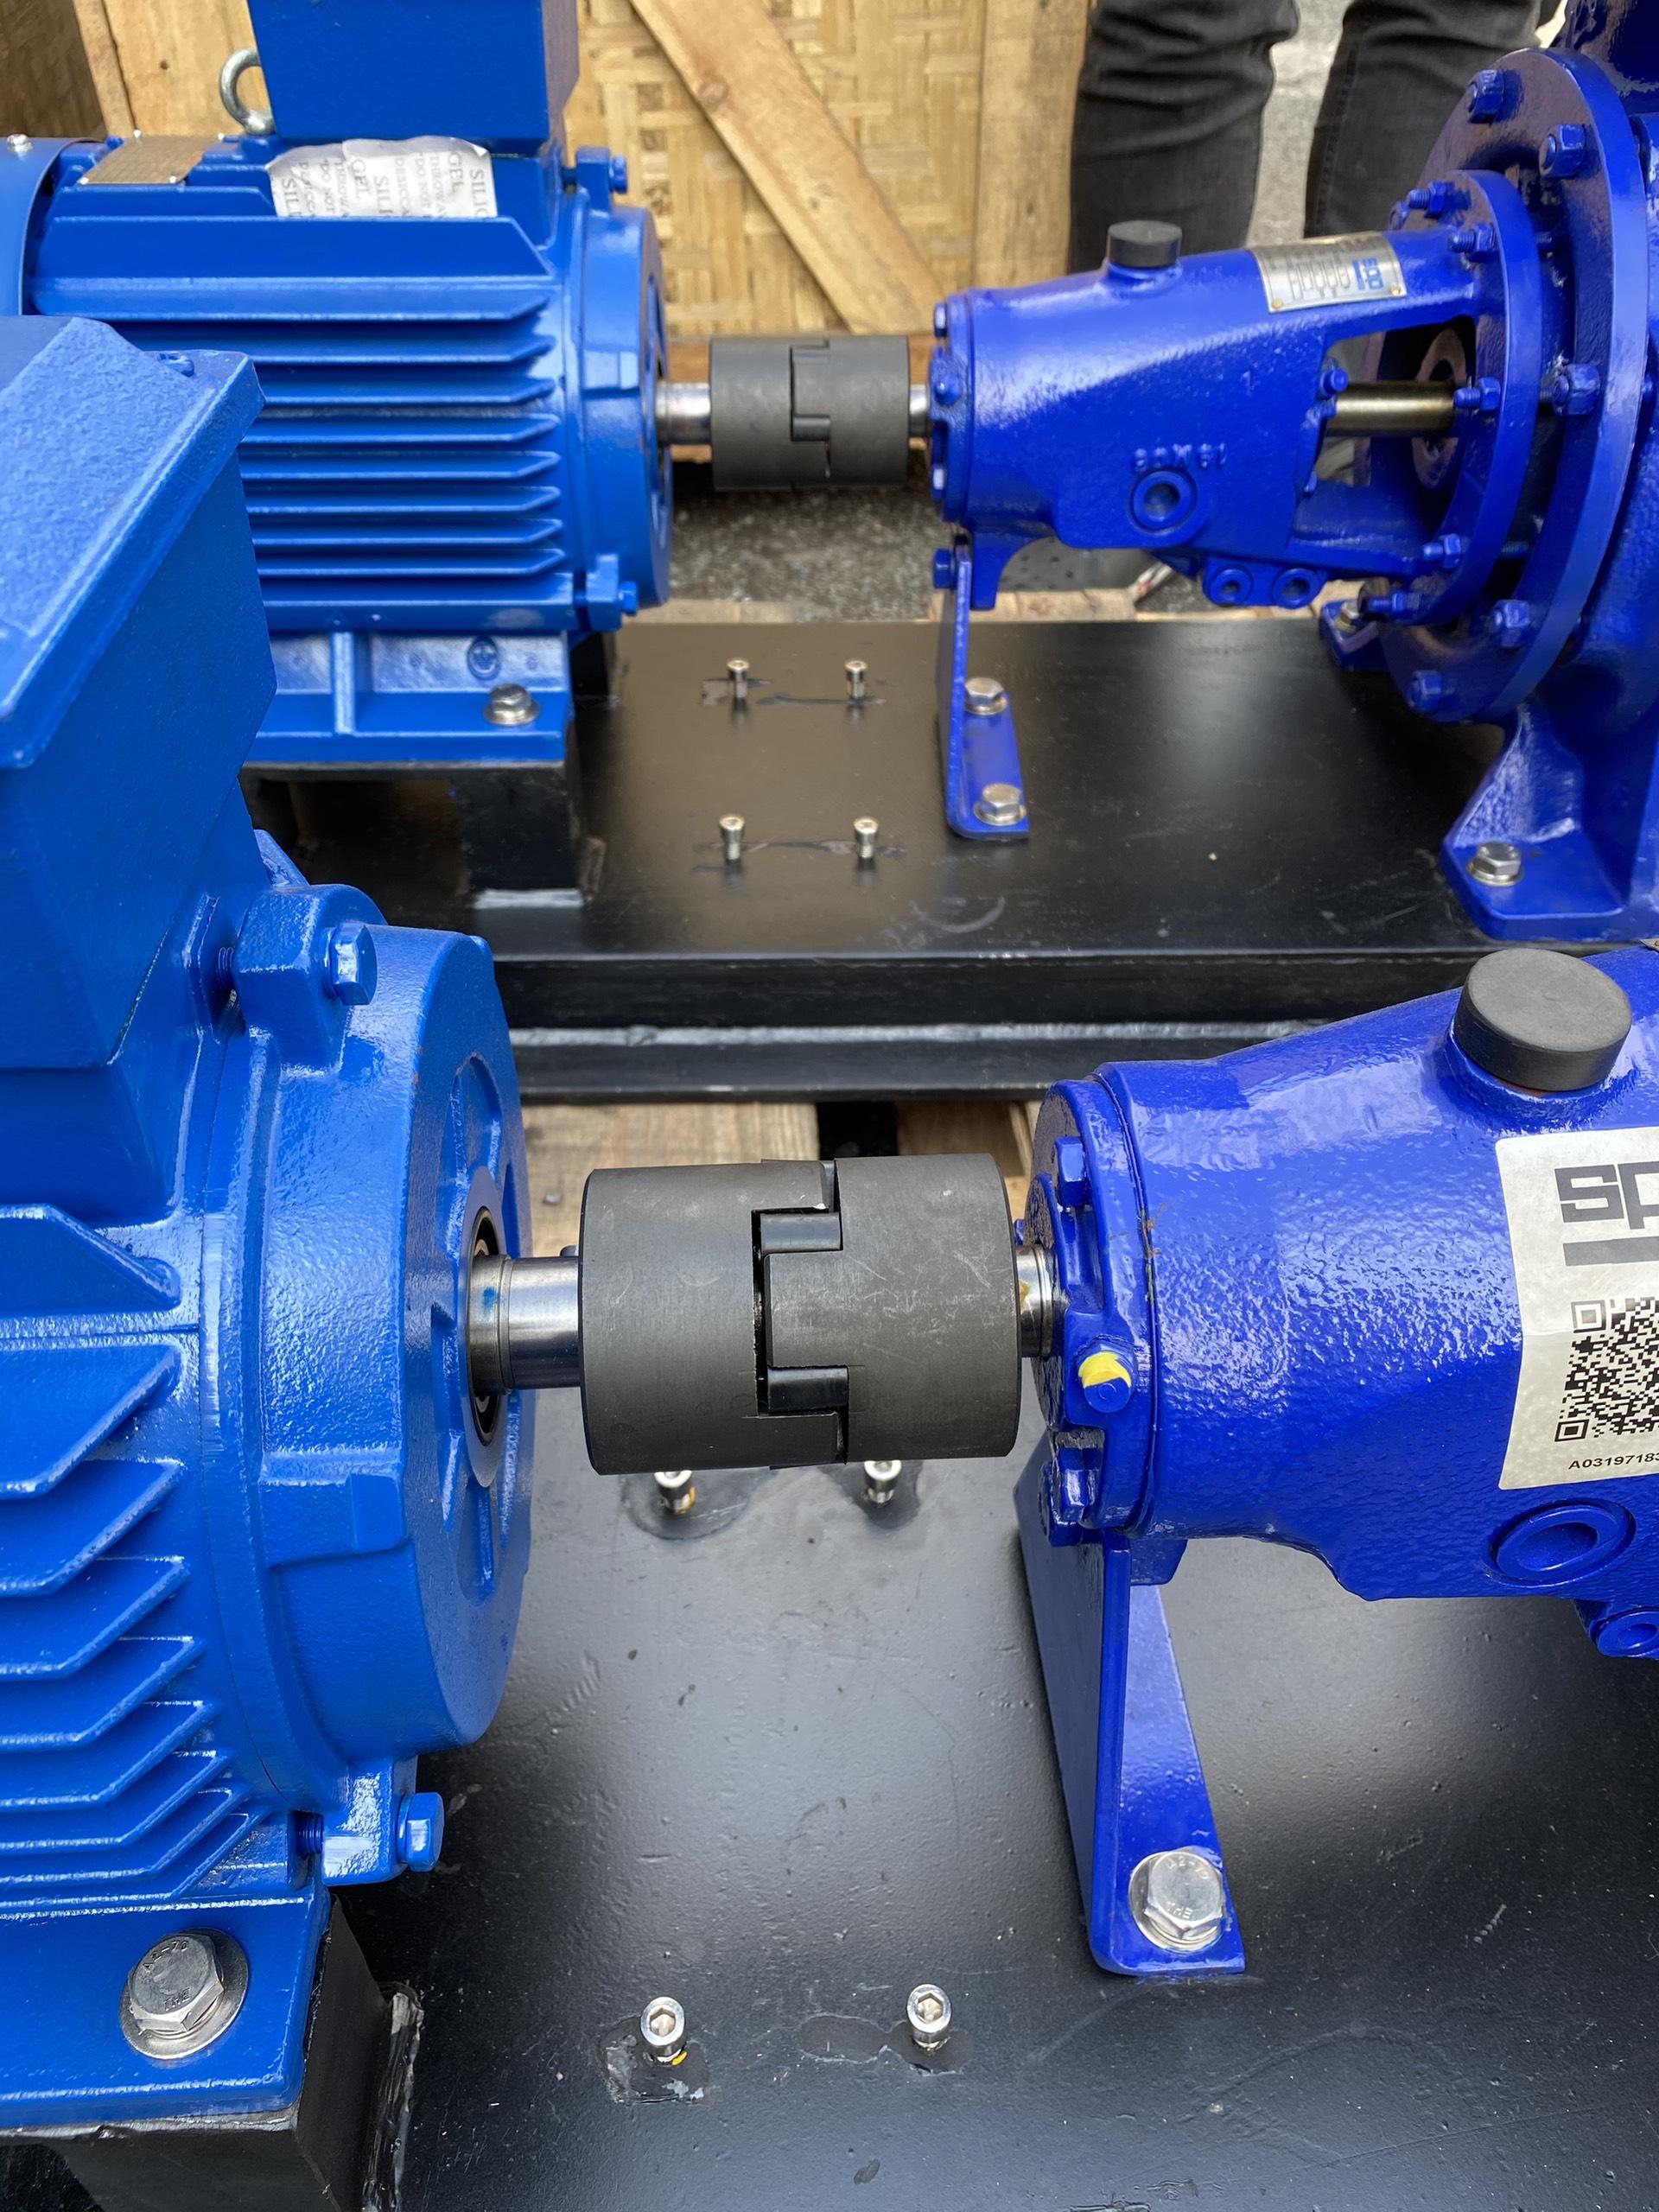 Cung cấp máy bơm SPP cho hệ chiller Nhà máy Olam Ducati và Tomahawk CPC Roasting Plant – Pump